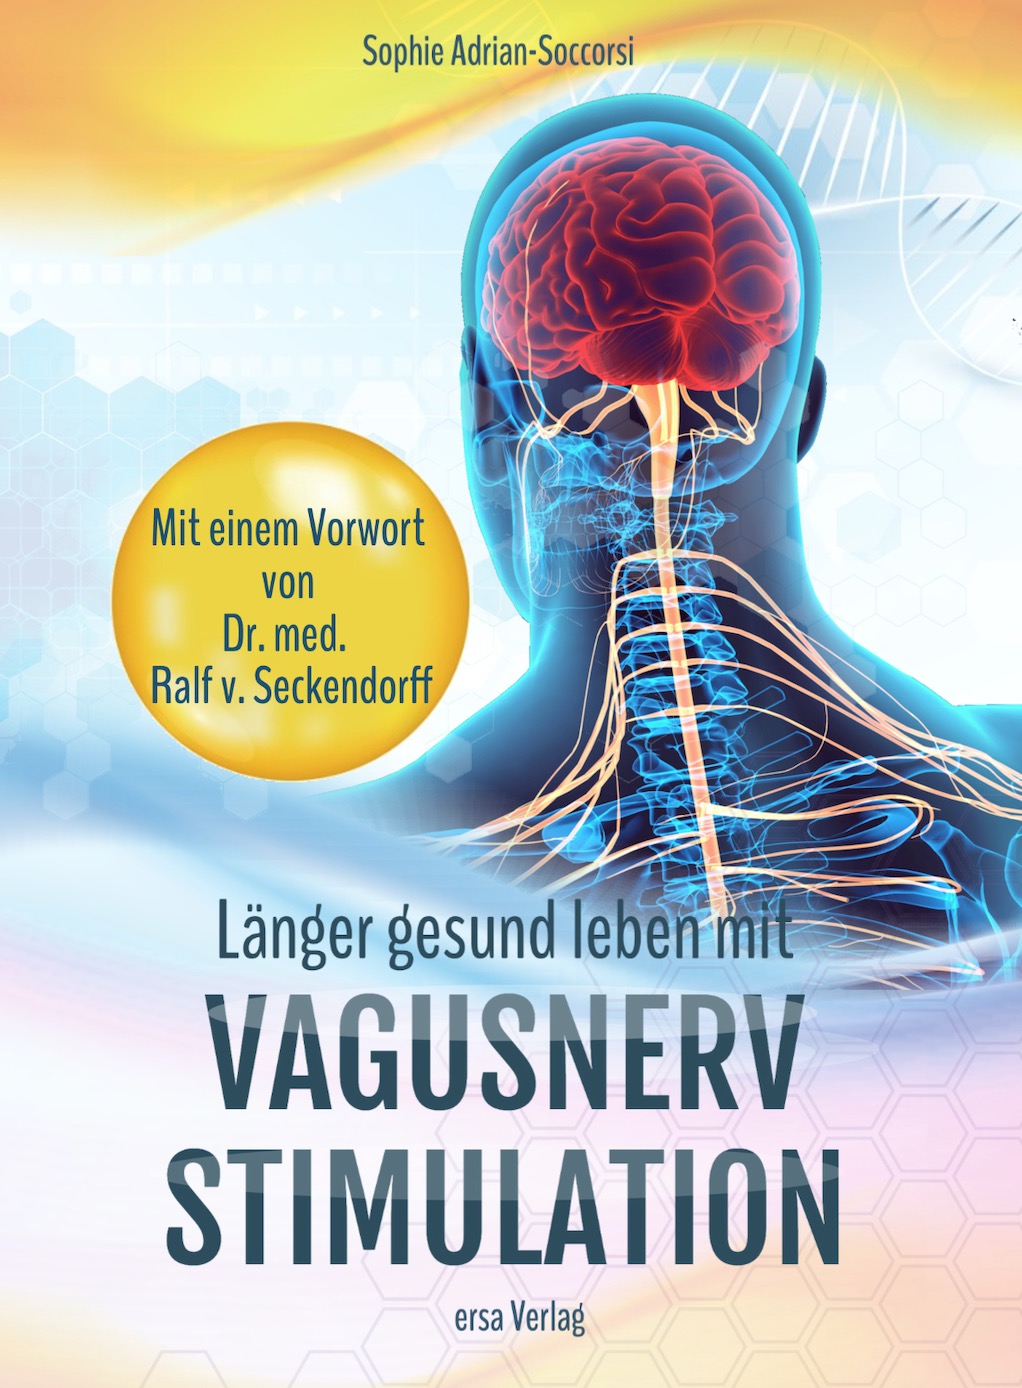 Vagusnerv Stimulation